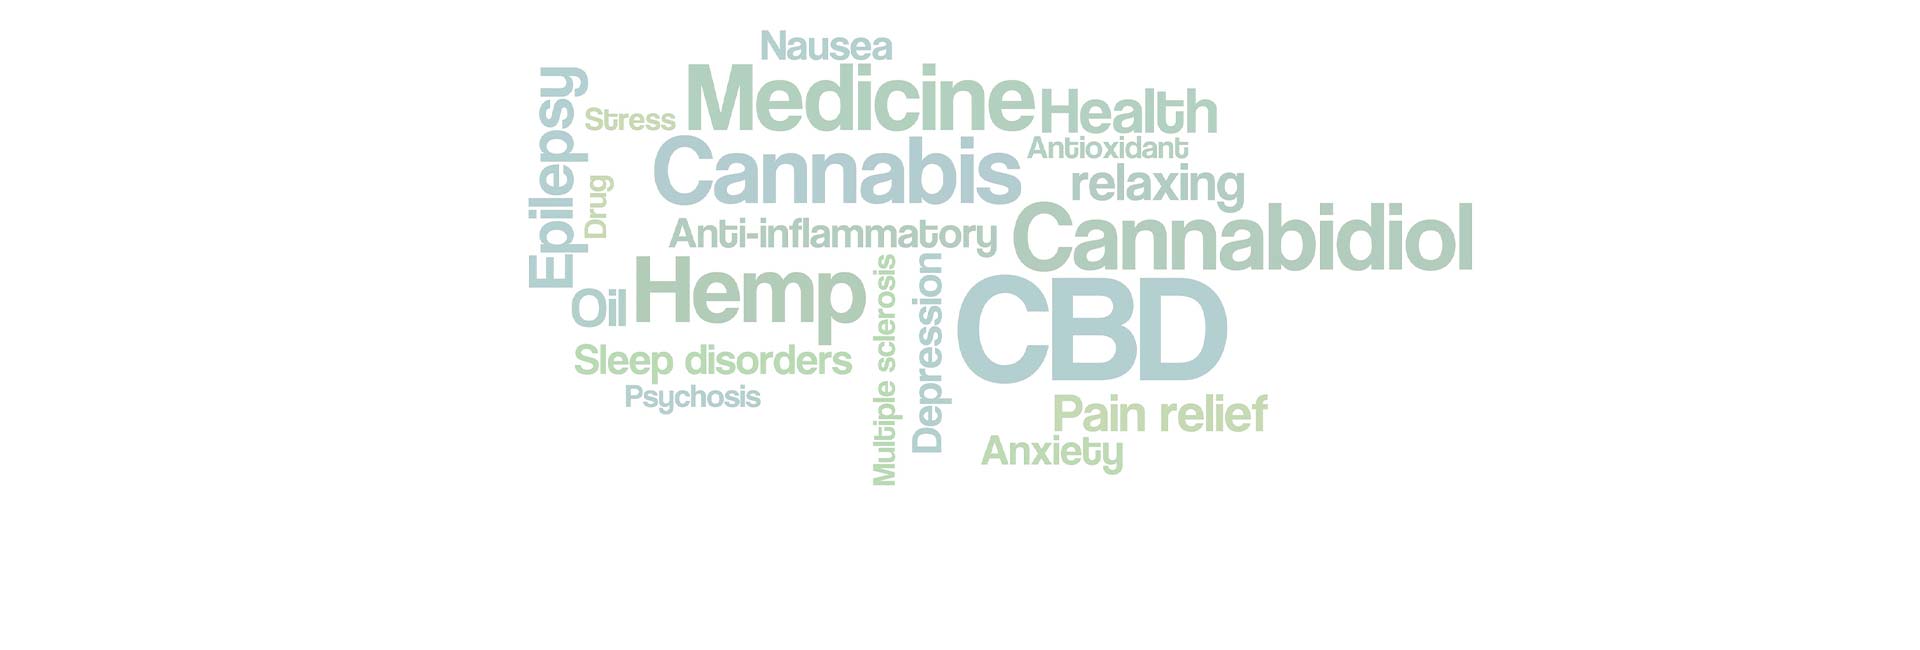 Medical cannabis word cloud